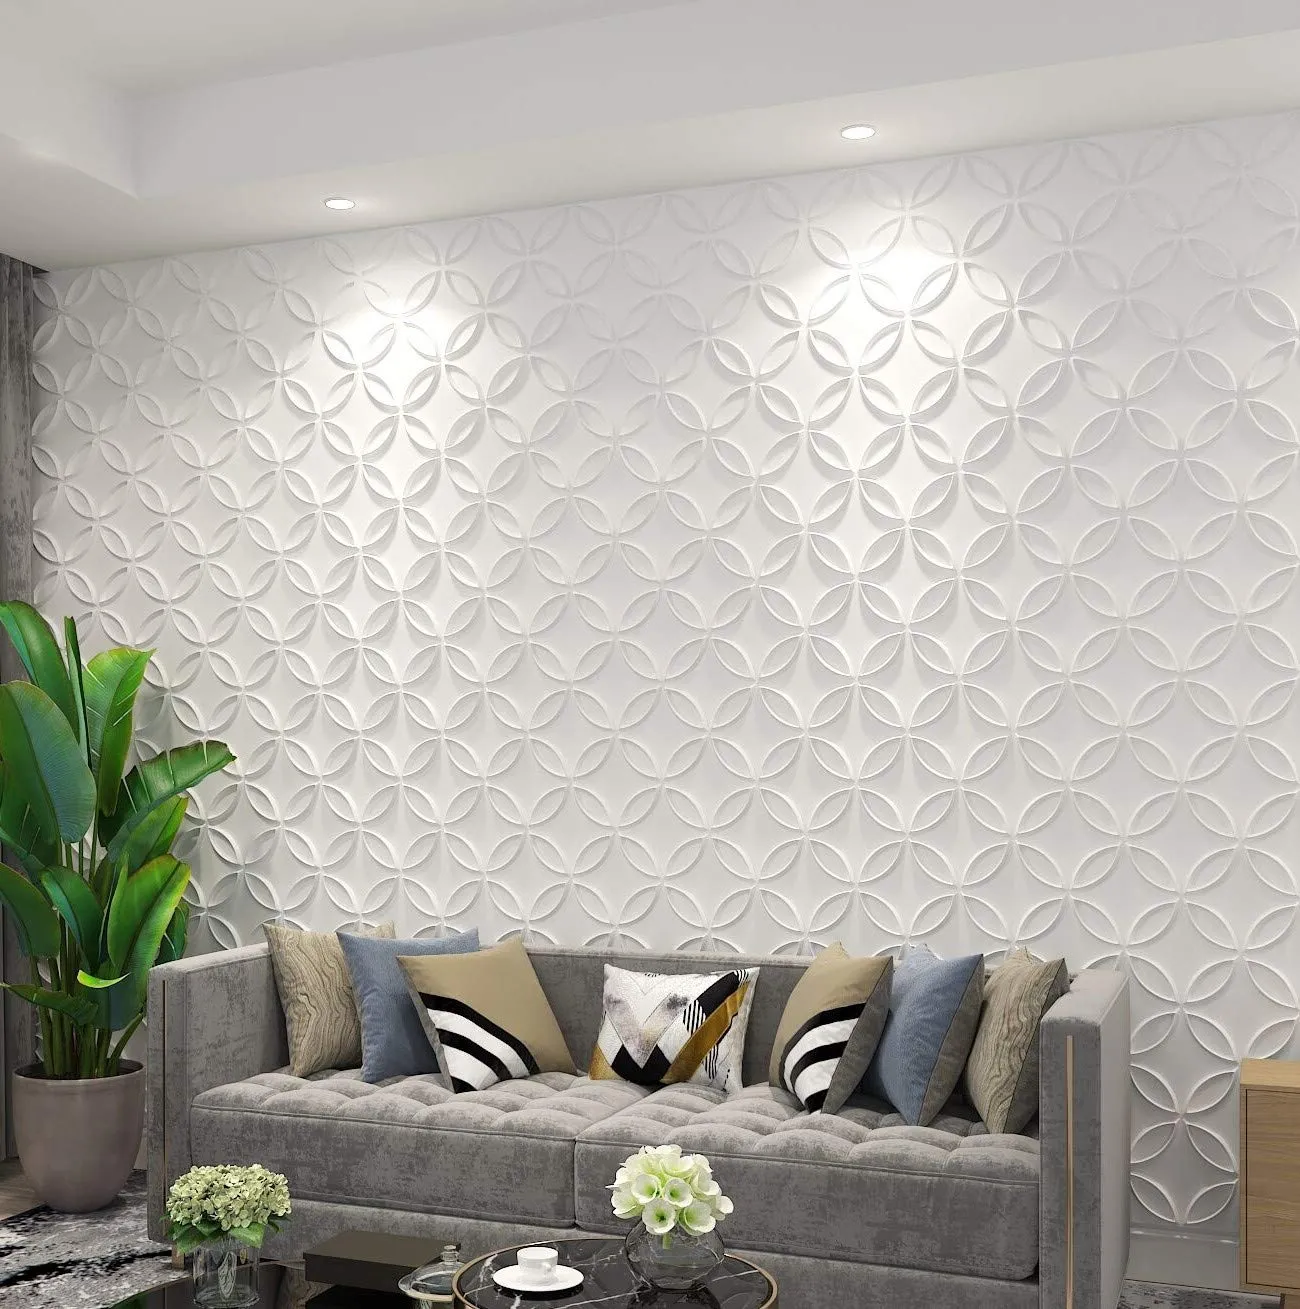 Art3d 50x50cm 3D Duvar Panelleri Ses Geçirmez Çıkartmalar Kilitli Daireler Beyaz İç Tavan ve Ev Dekorasyonu Konut veya Ticari (12 fayans)